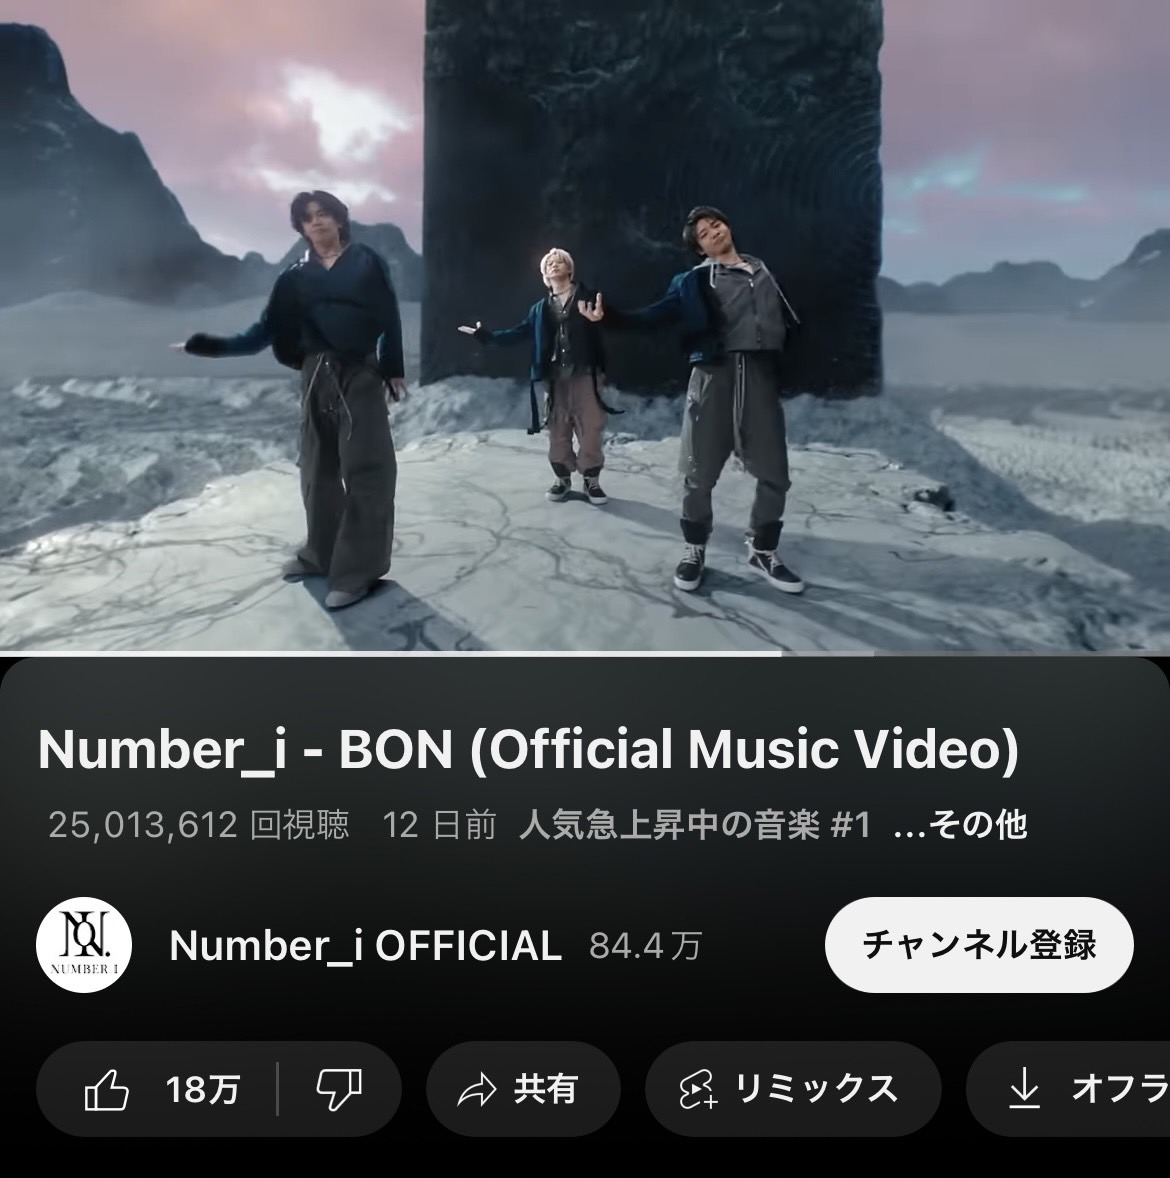 2500万回再生を突破した「BON」のミュージックビデオ(Number_i公式YouTubeから)